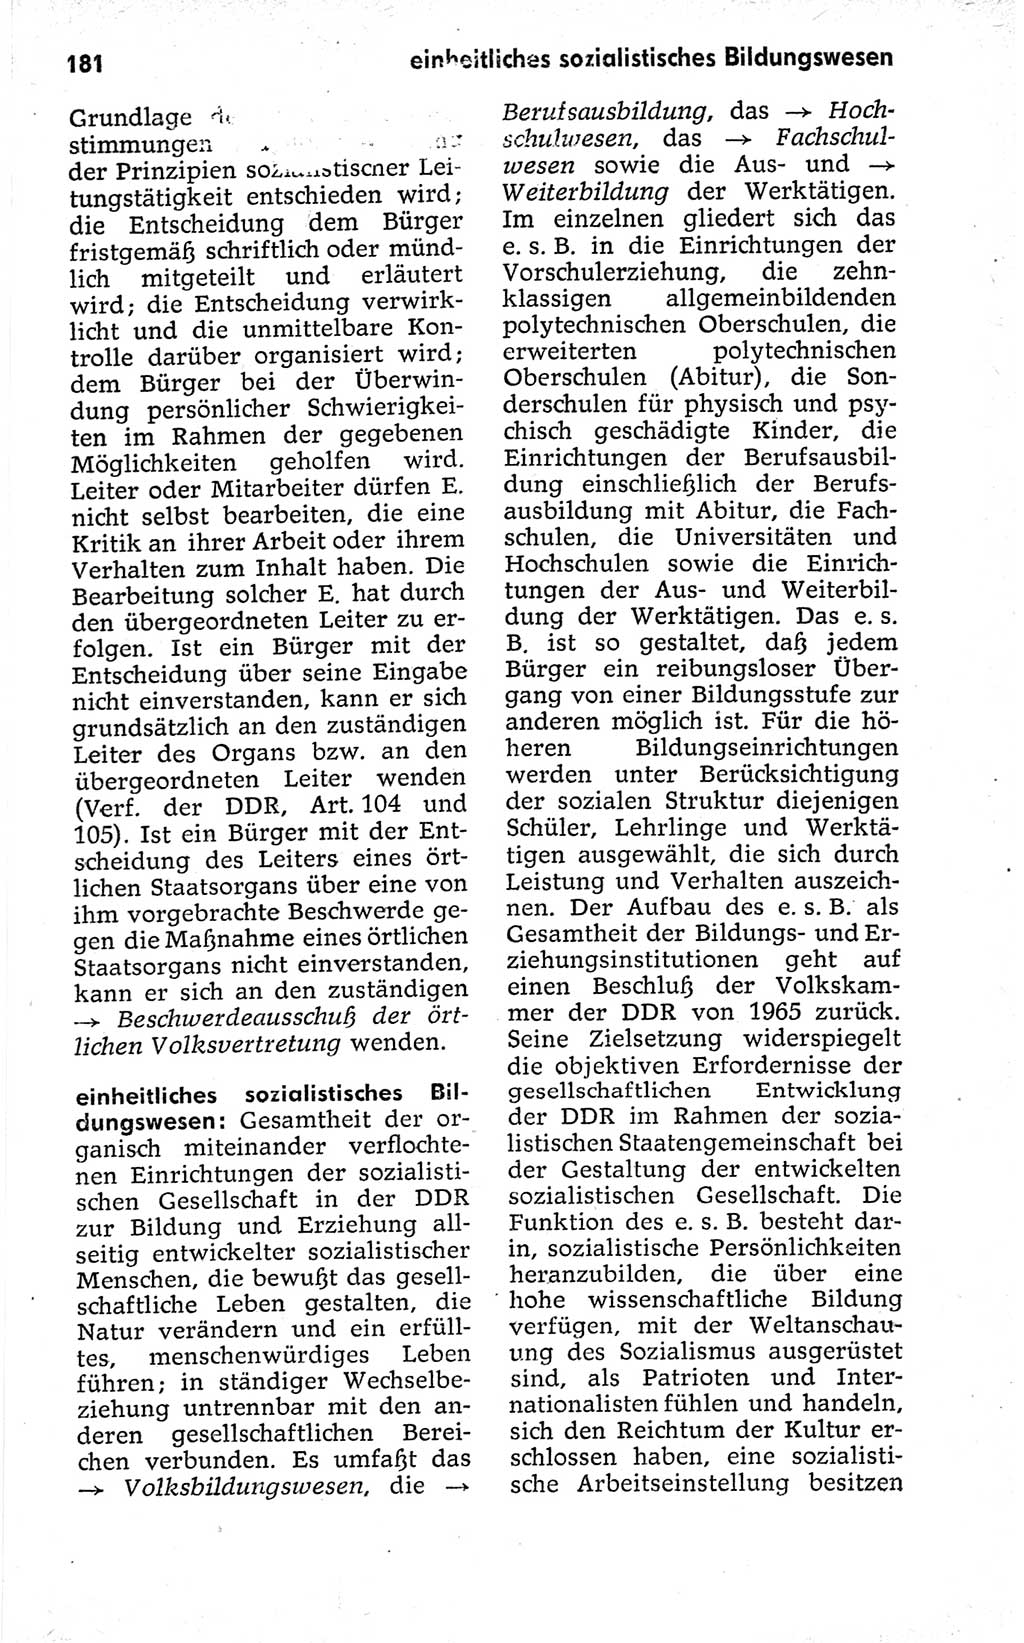 Kleines politisches Wörterbuch [Deutsche Demokratische Republik (DDR)] 1973, Seite 181 (Kl. pol. Wb. DDR 1973, S. 181)